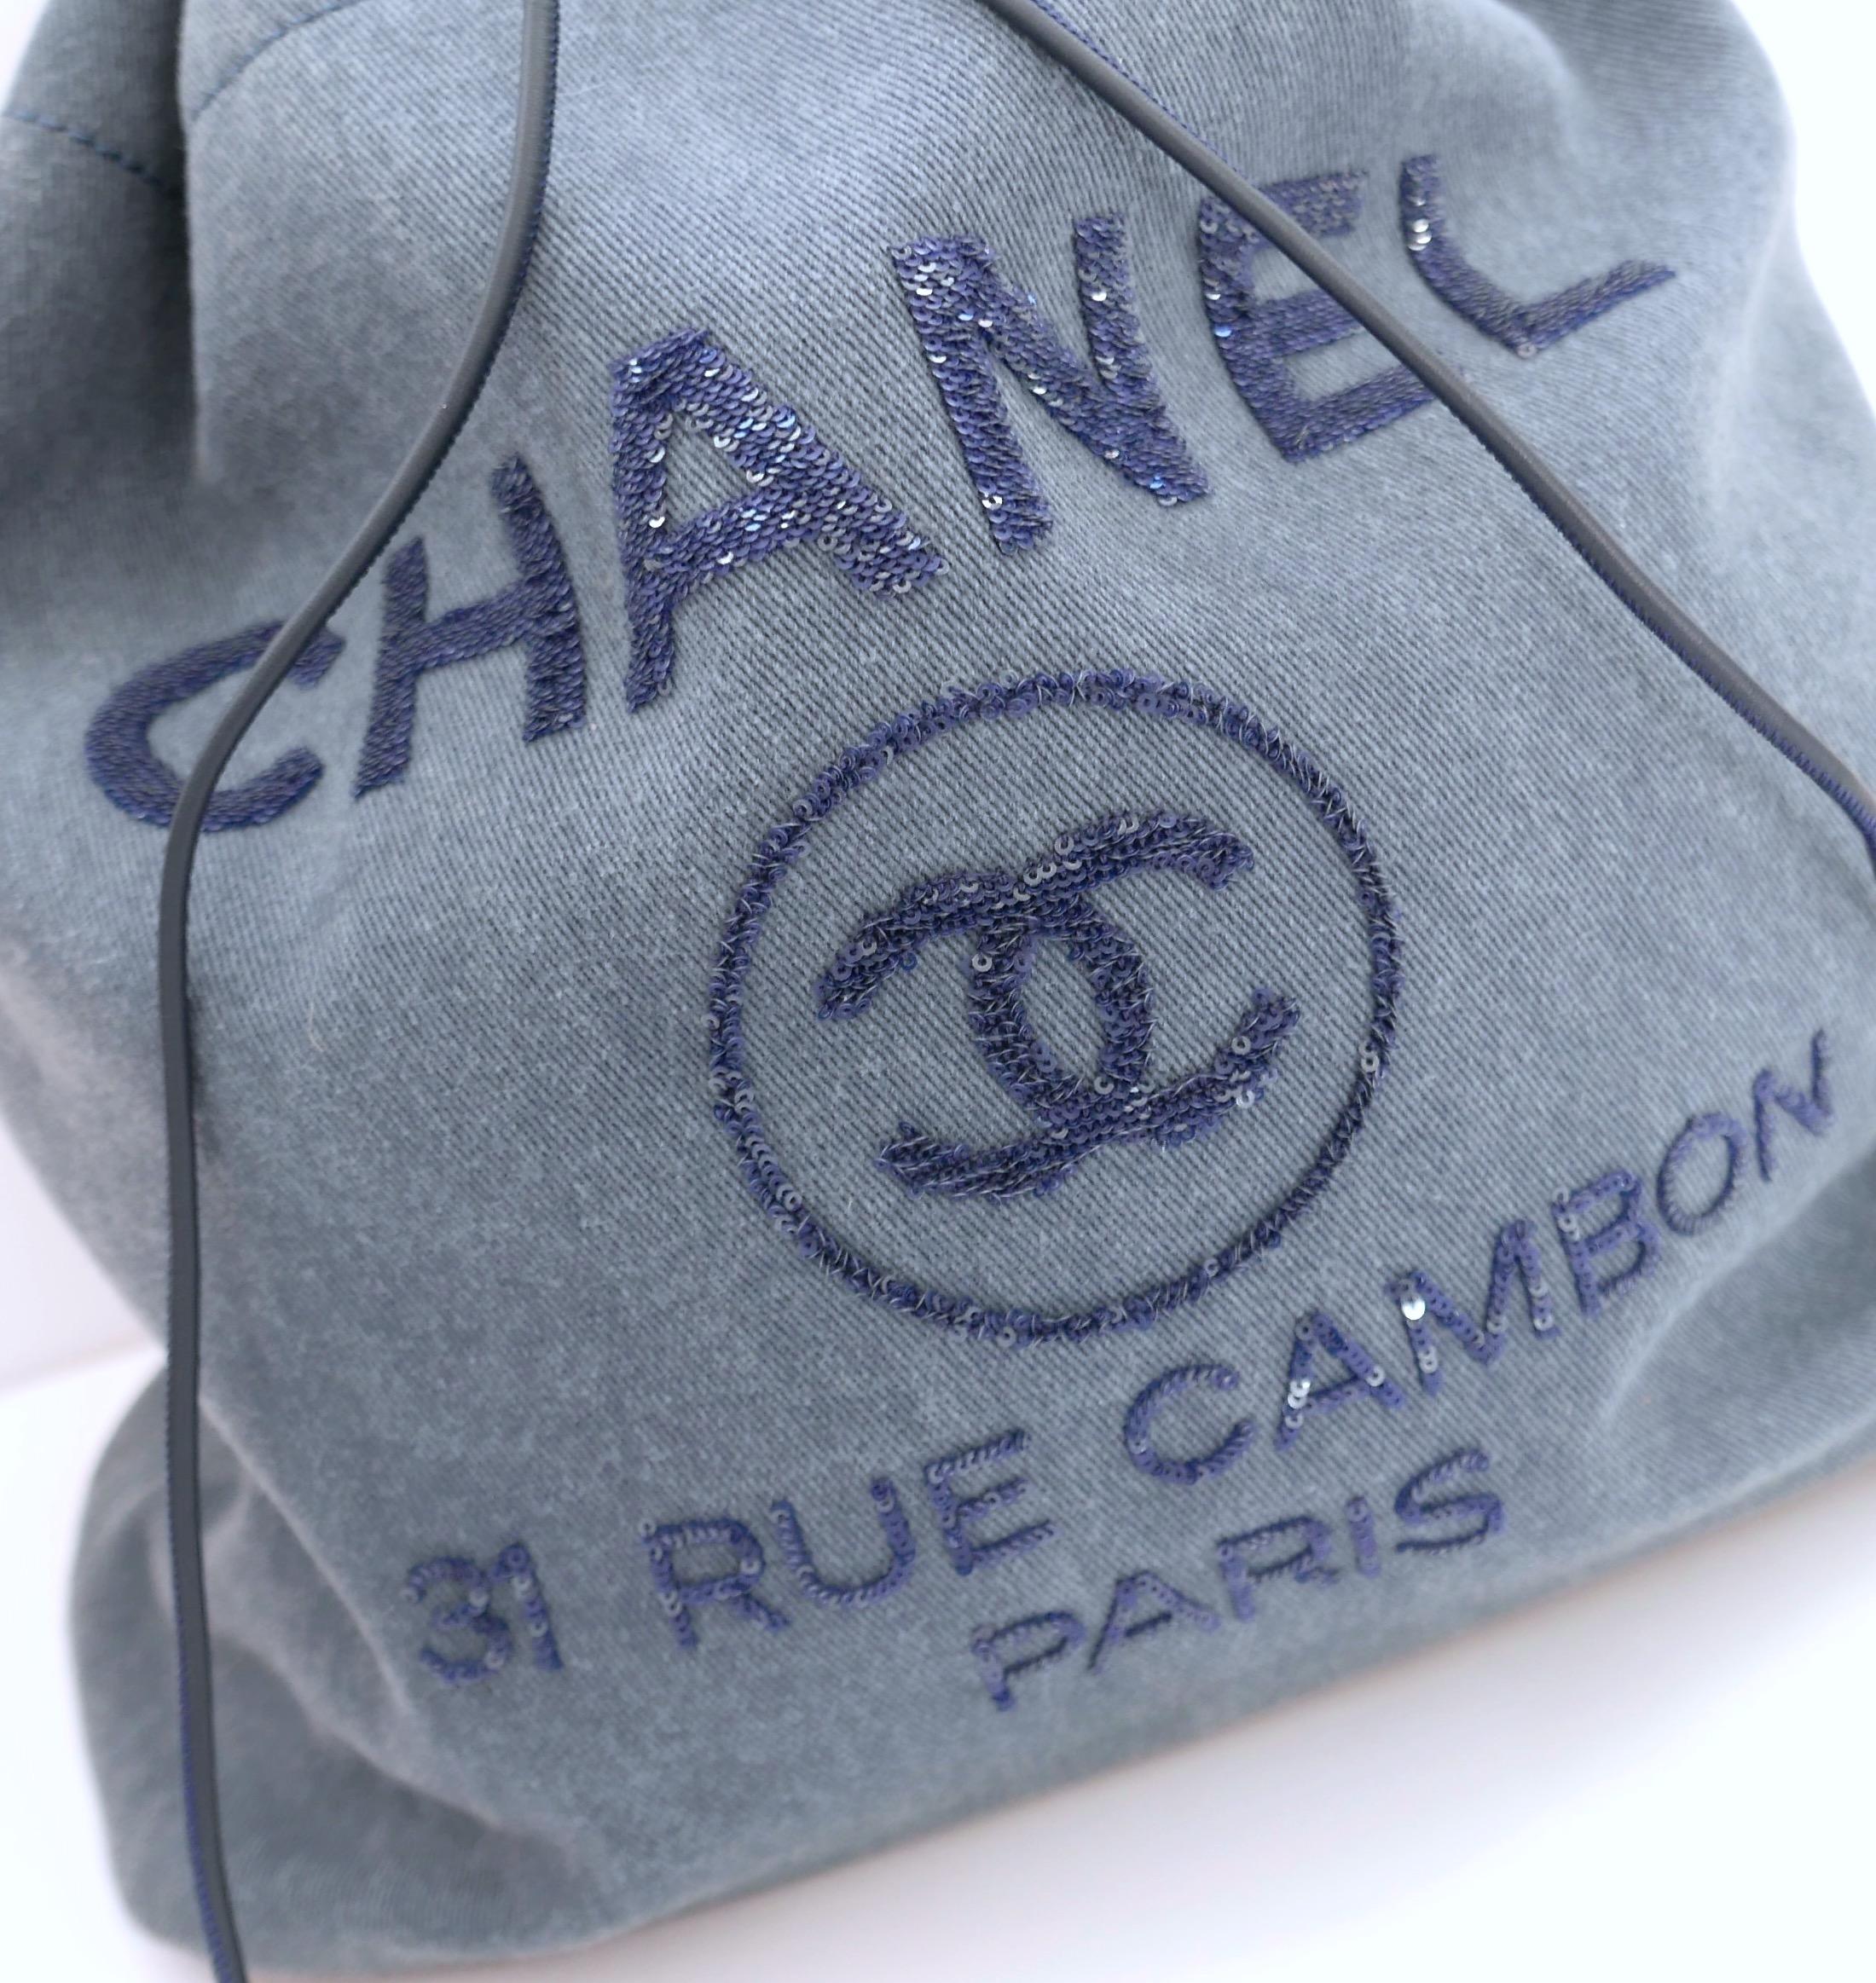 Sac à dos en denim Chanel Deauville très cool. Nouveau avec carte d'authenticité. Confectionné en denim bleu vintage doux avec un superbe logo en paillettes, des ferrures argentées, des garnitures en cuir ton sur ton, deux bandoulières plates avec